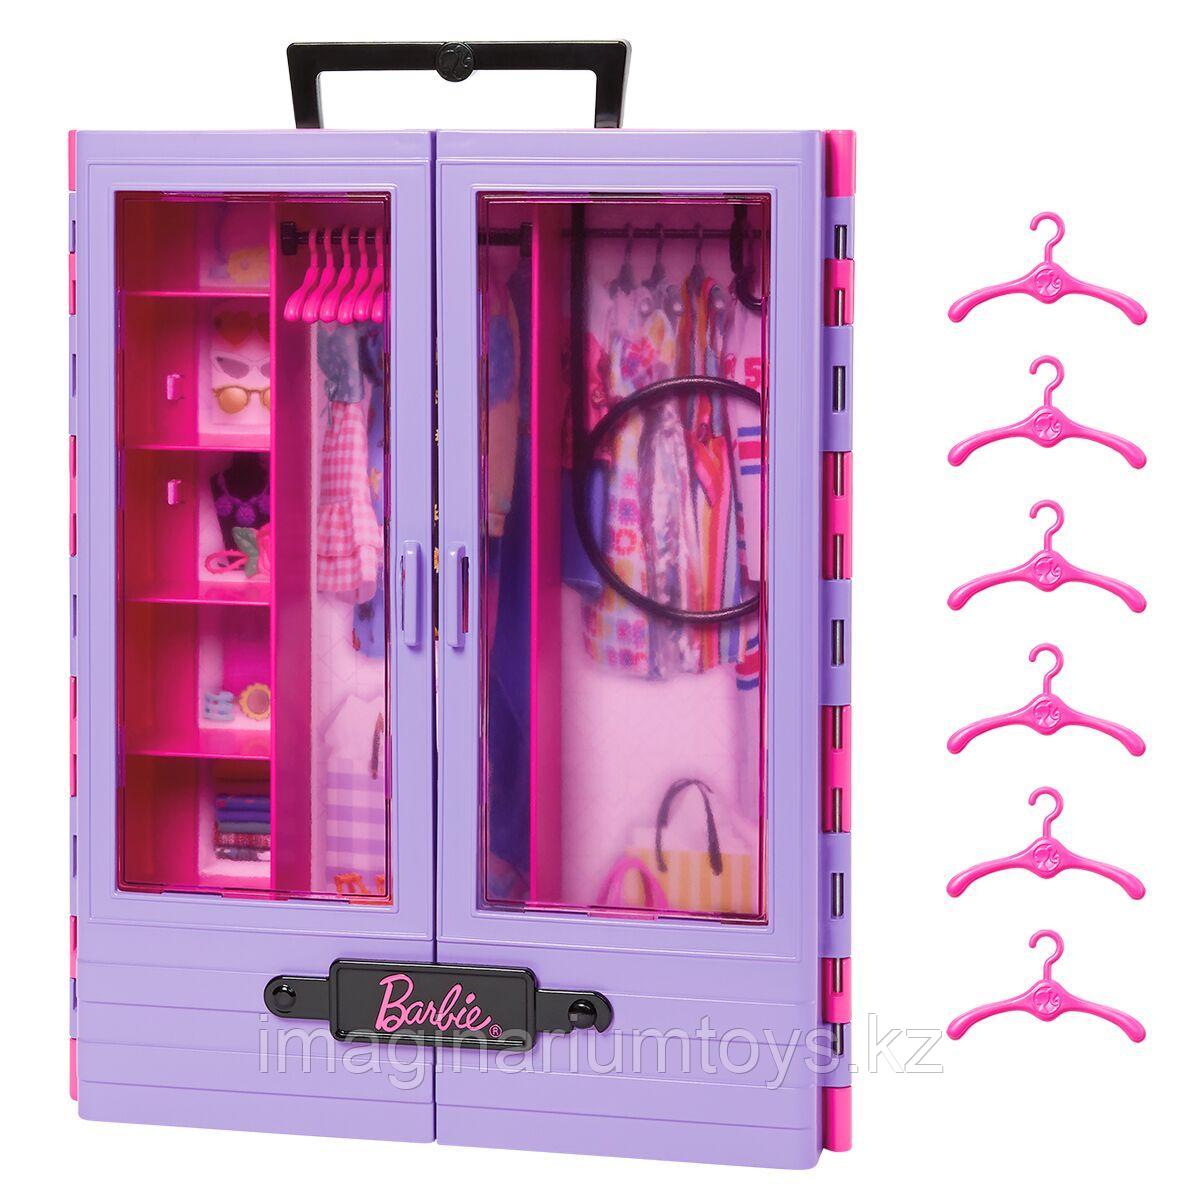 Барби Игровой набор Шкаф для одежды Barbie, фото 1